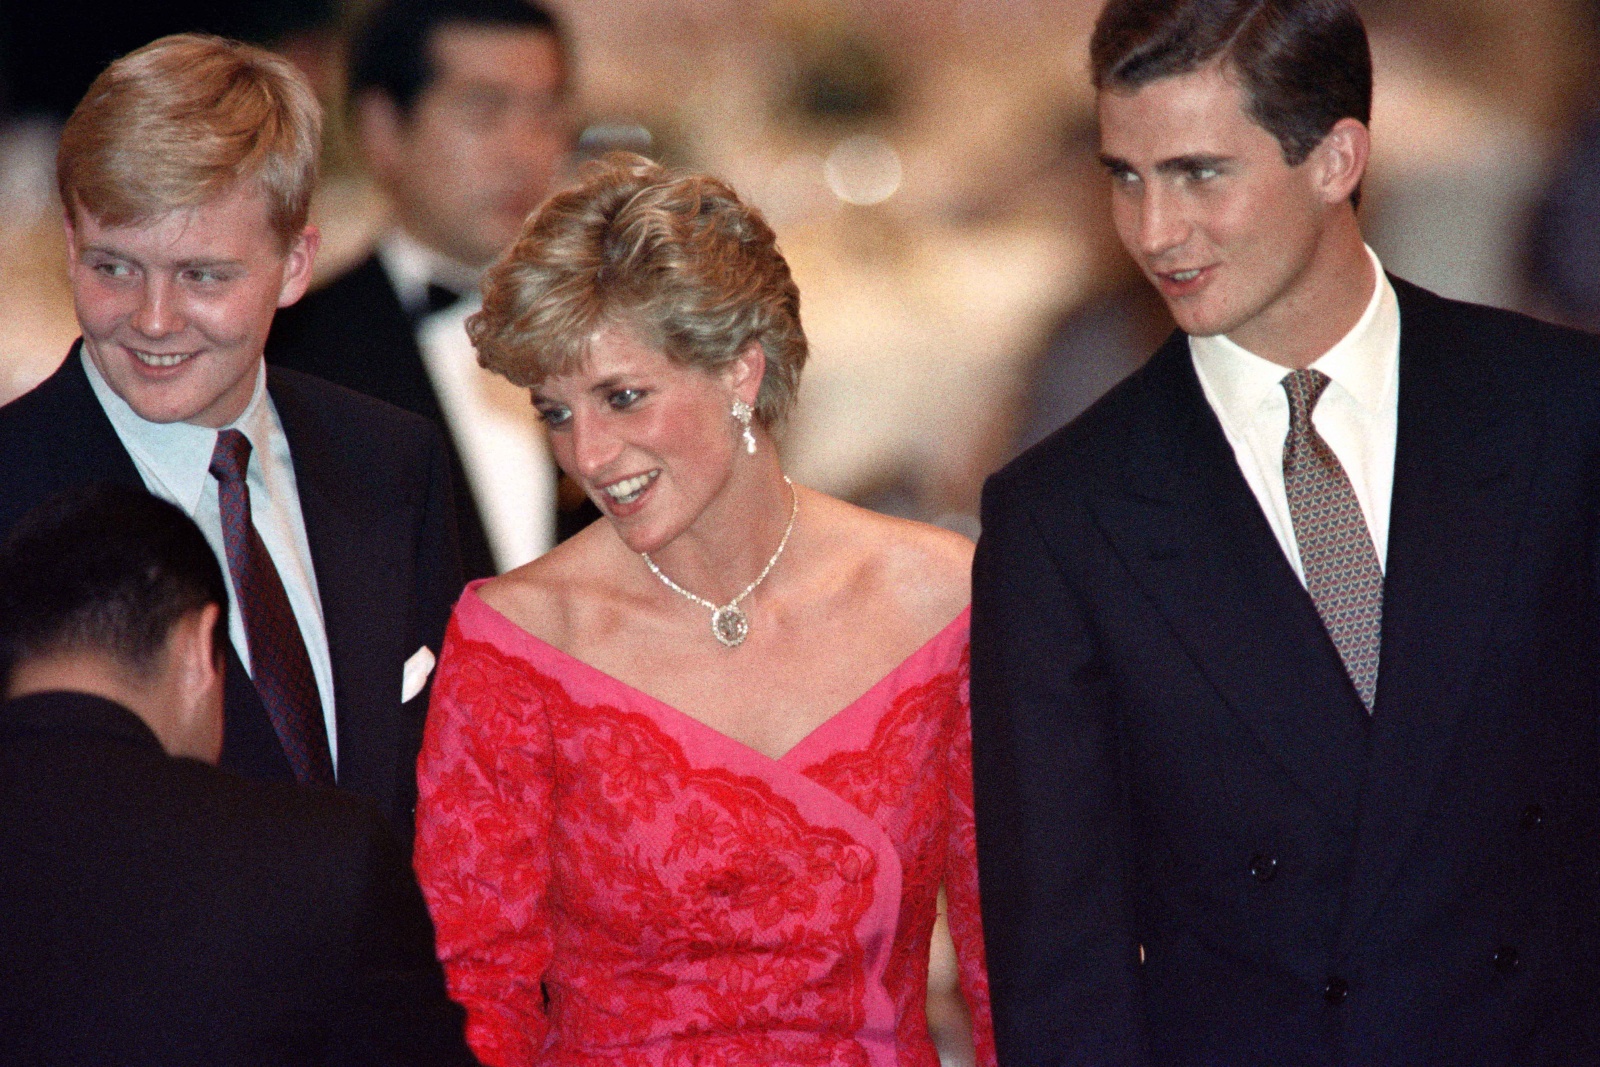 Diana entre dois futuros reis: a história de uma fotografia